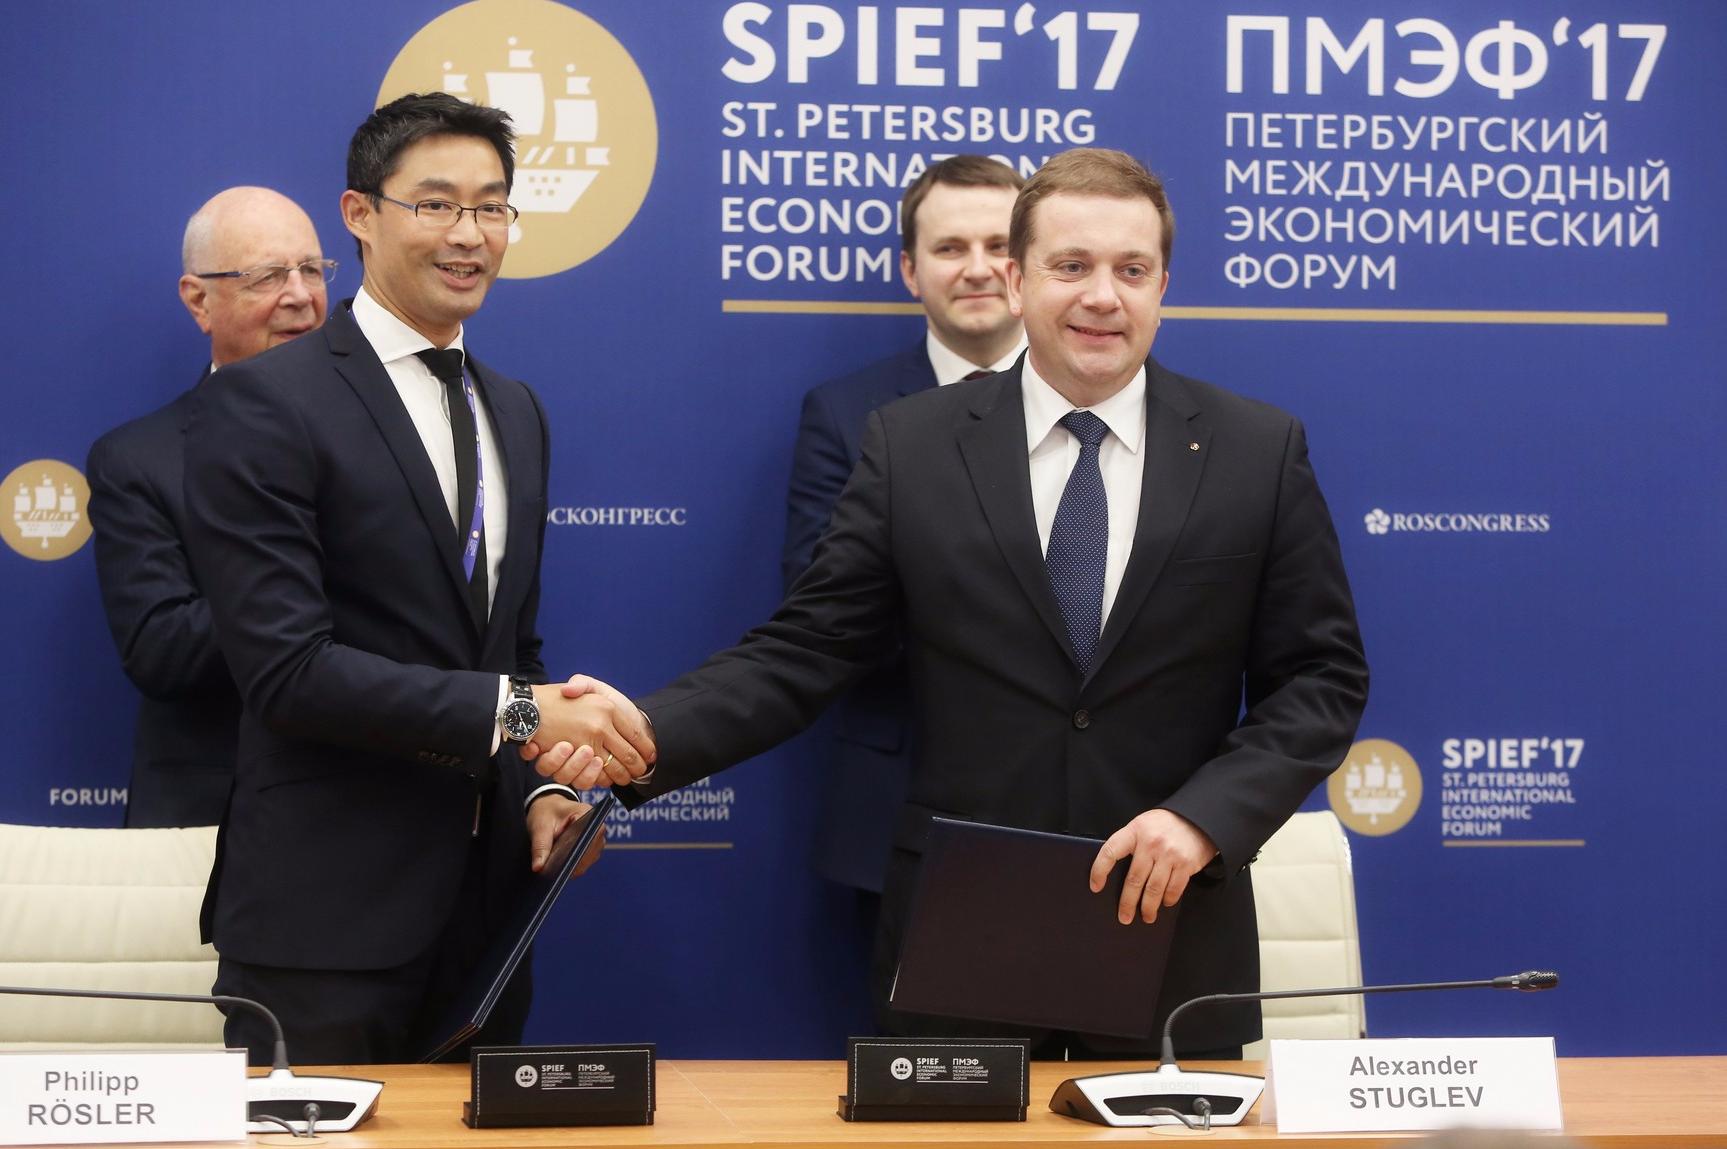 Фонд «Росконгресс» и Всемирный экономический форум договорились о сотрудничестве